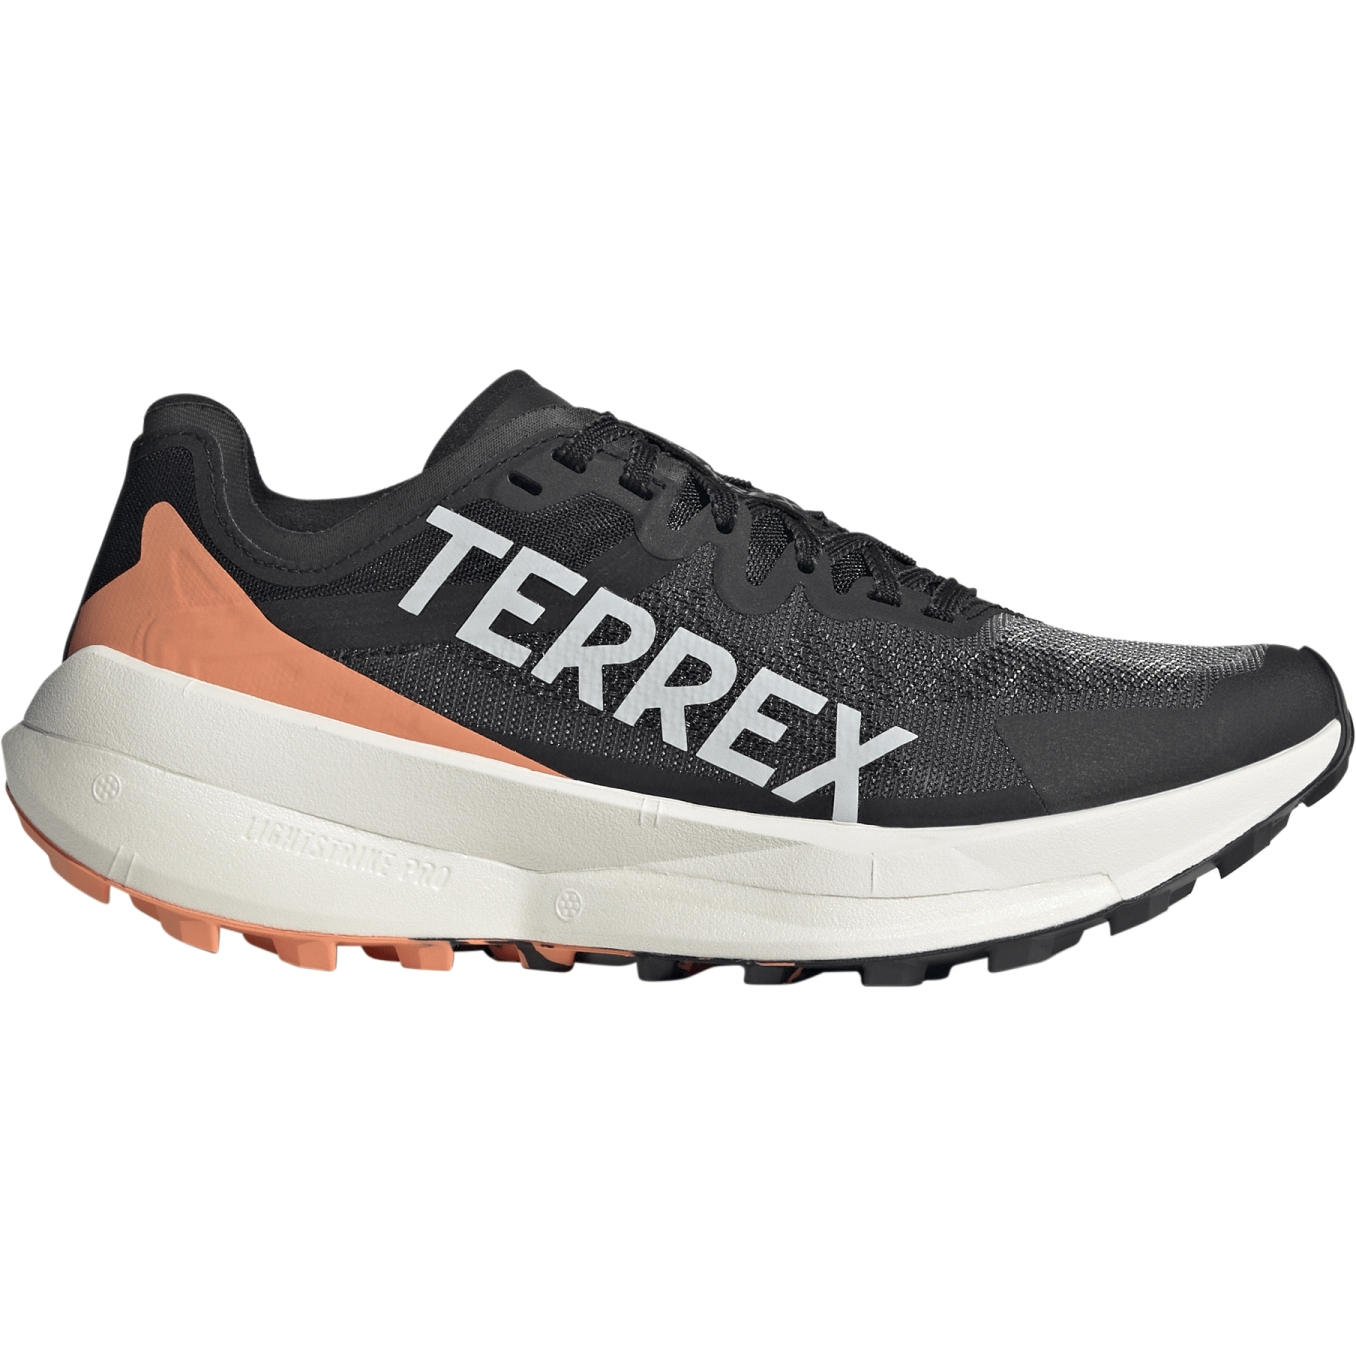 Produktbild von adidas TERREX Agravic Speed Trailrunningschuhe Damen - core black/grey one/amber tint IE7671